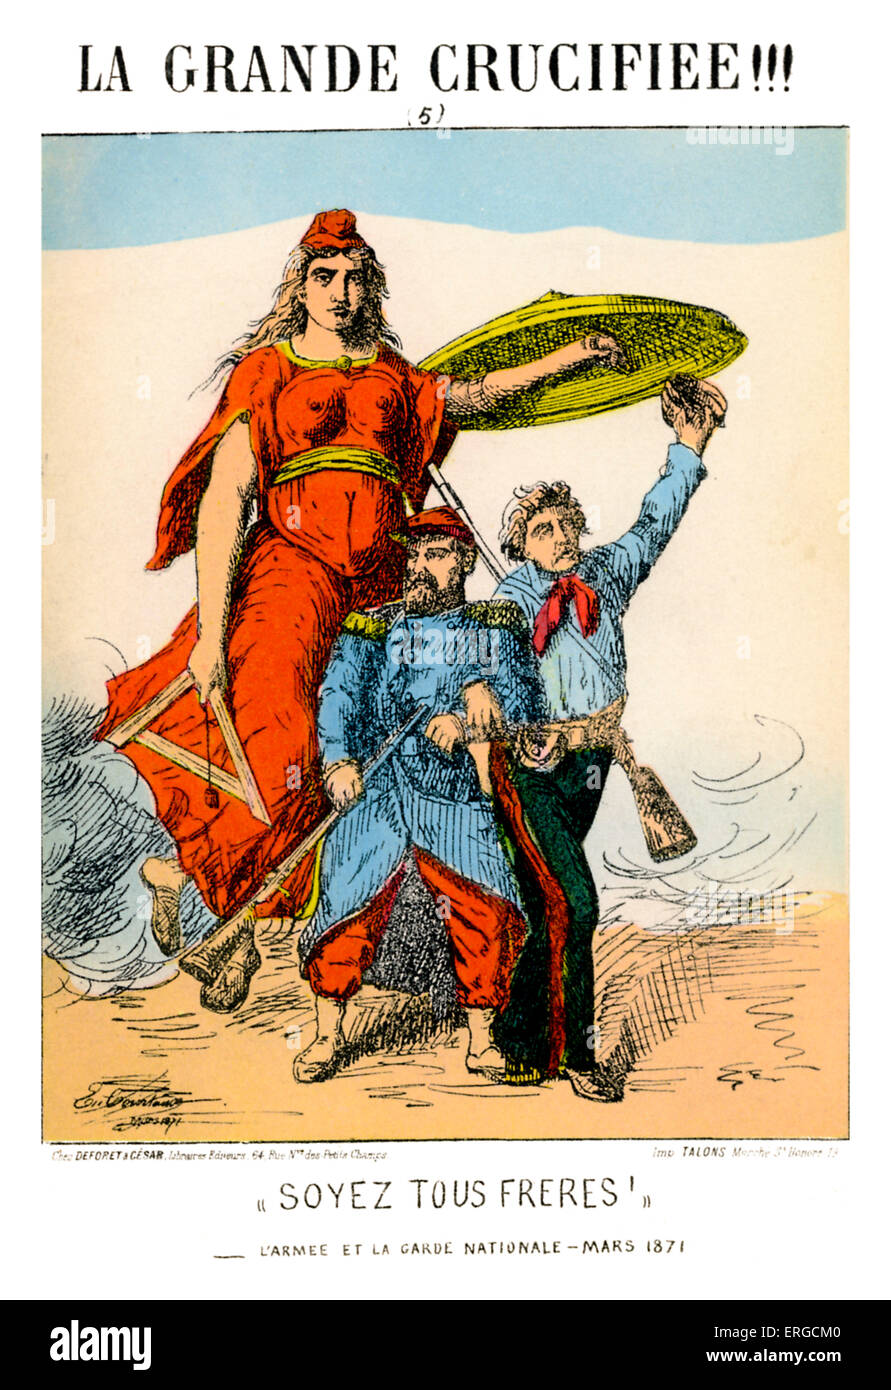 La Commune de Paris 1871 - caricature. Gouvernement qui a jugé la France 18 Mars - 28 mai 1871. Personfication walknig de France Banque D'Images